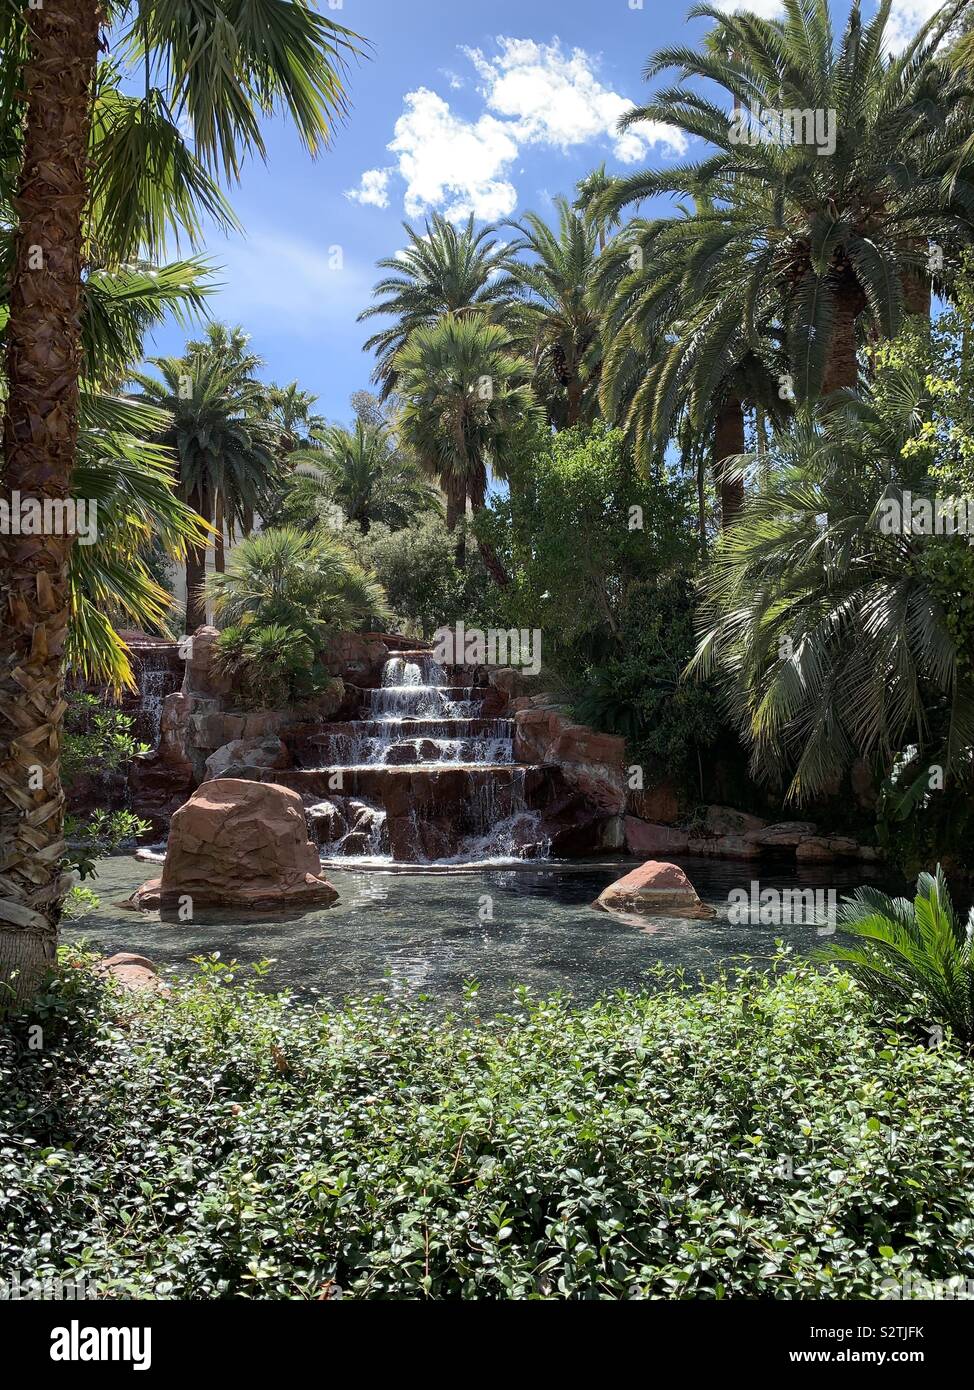 Im tropischen Garten mit Wasserfällen und Palmen Stockfoto